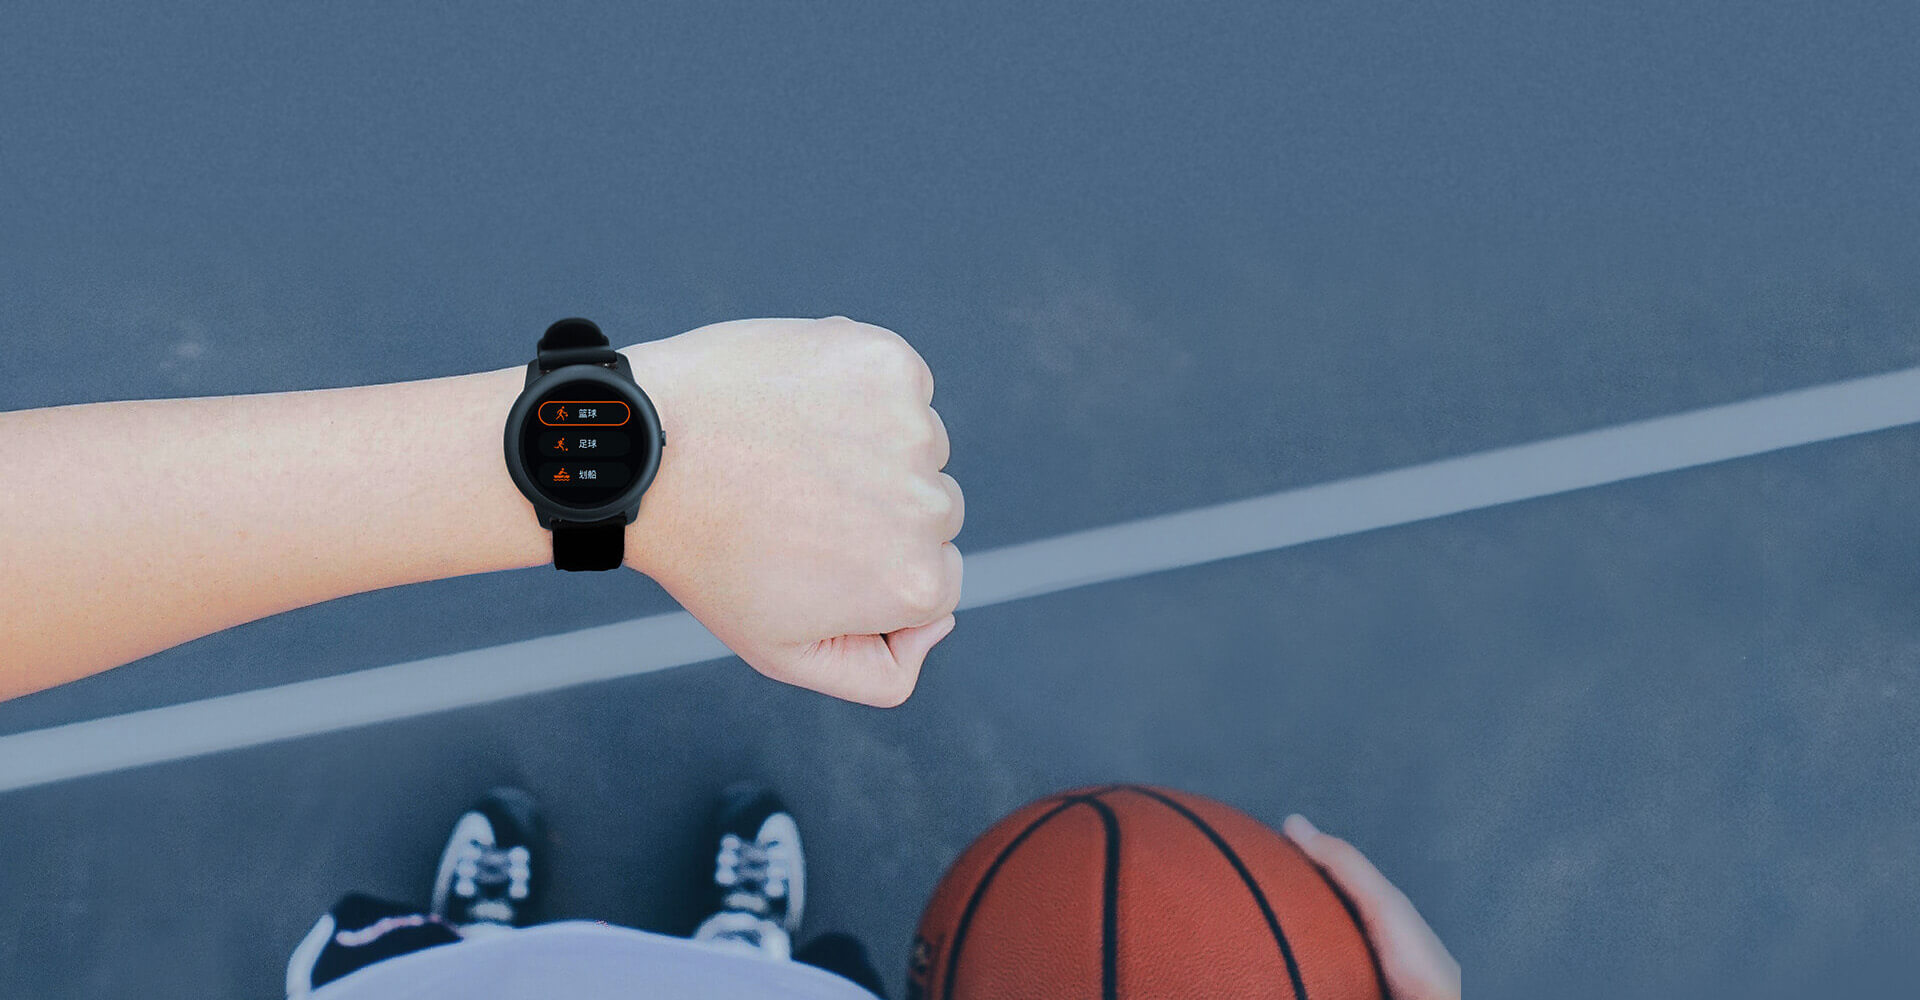 Haylou Solar Smart Watch 12 sport modes